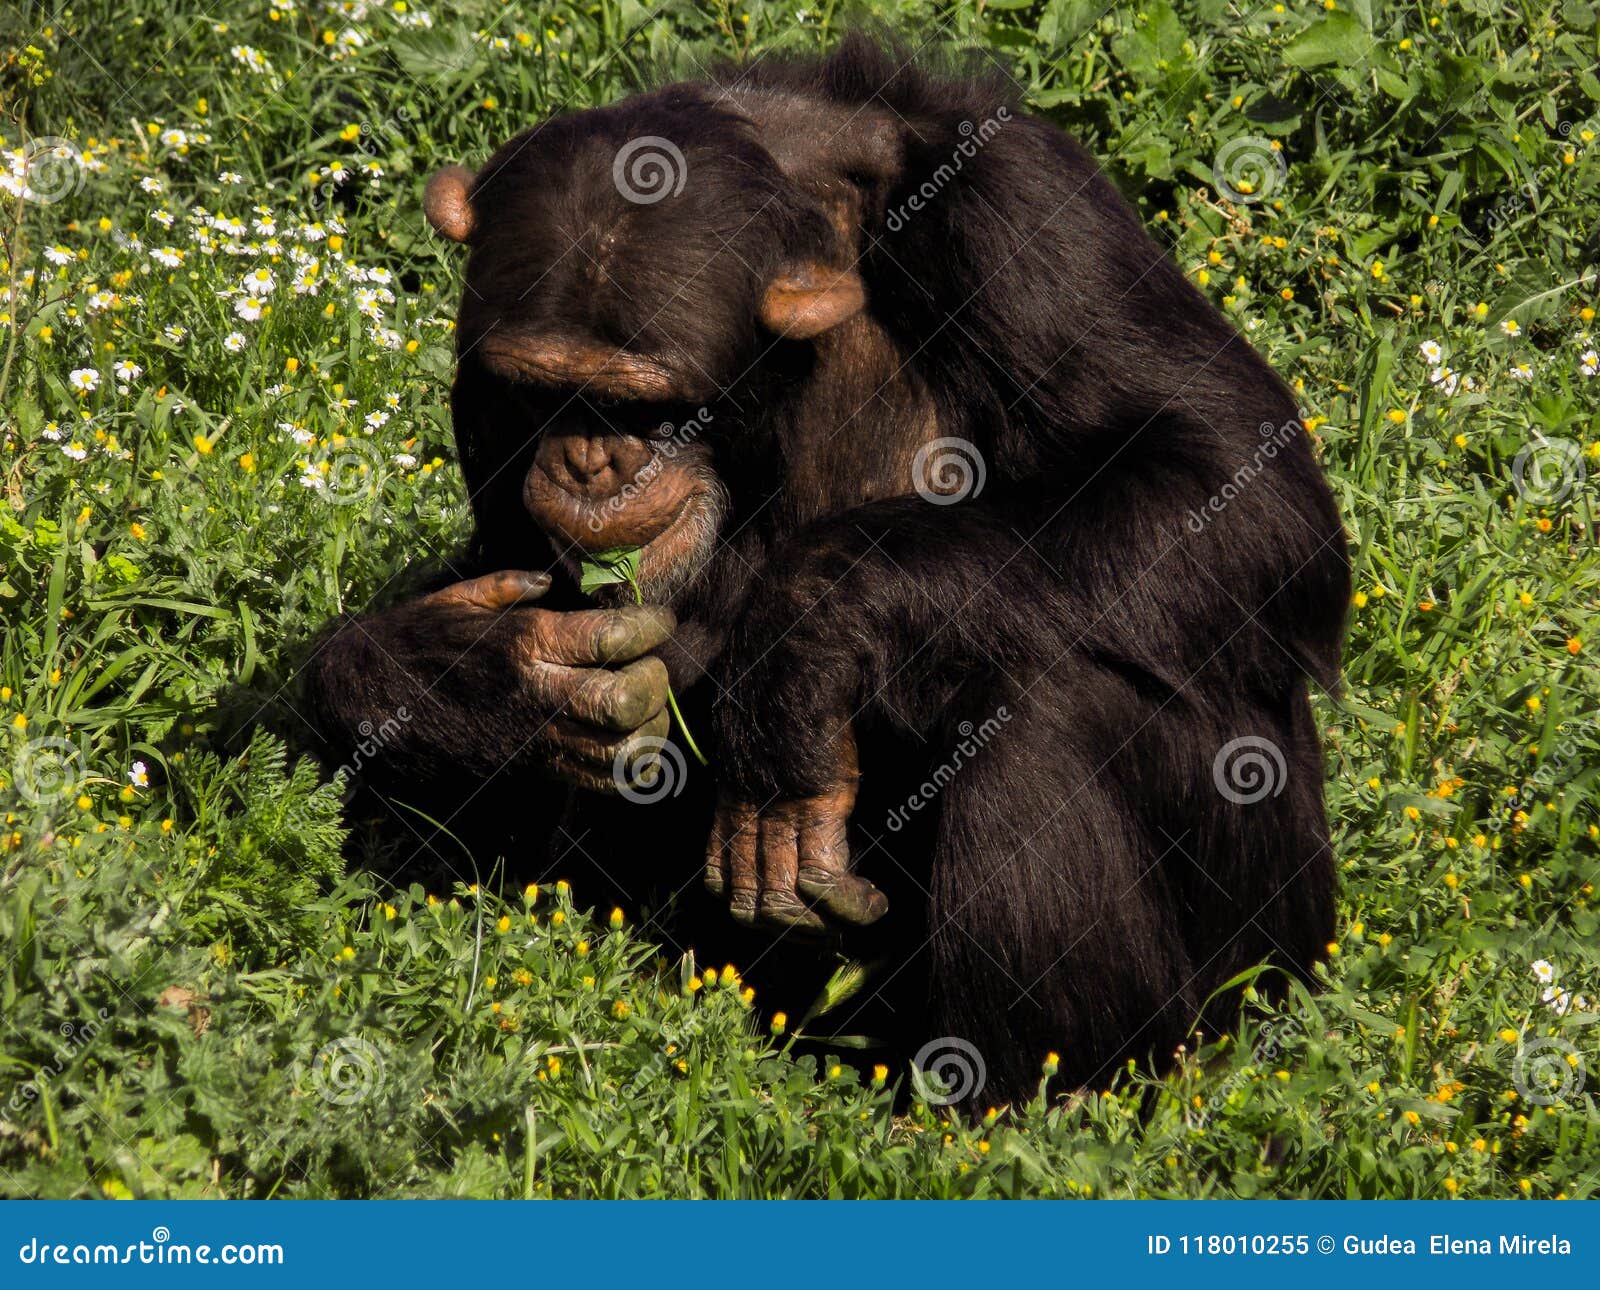 a chimpanzee who eats